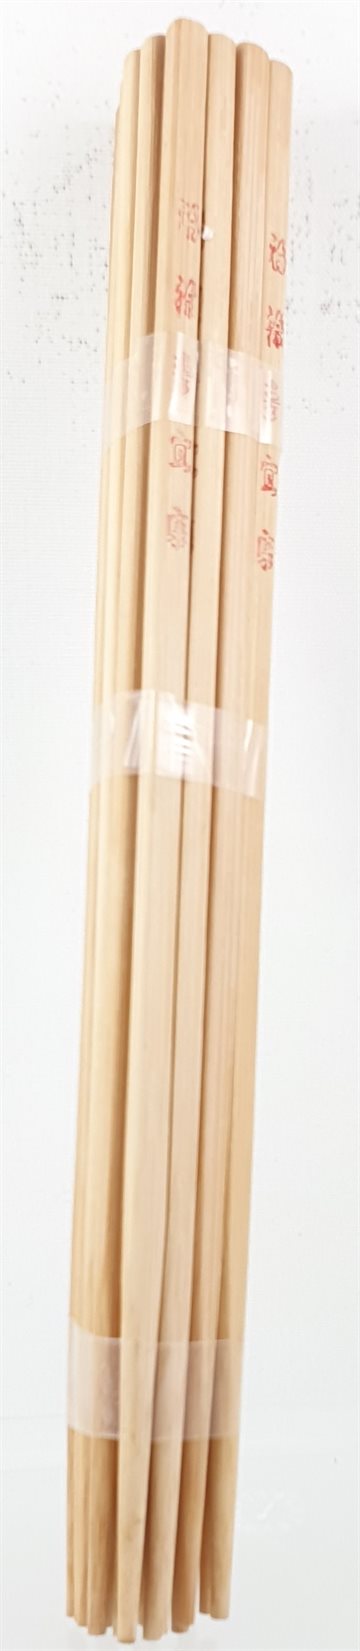 Wood Chopstiks - Træ Spisepinde18 stk.